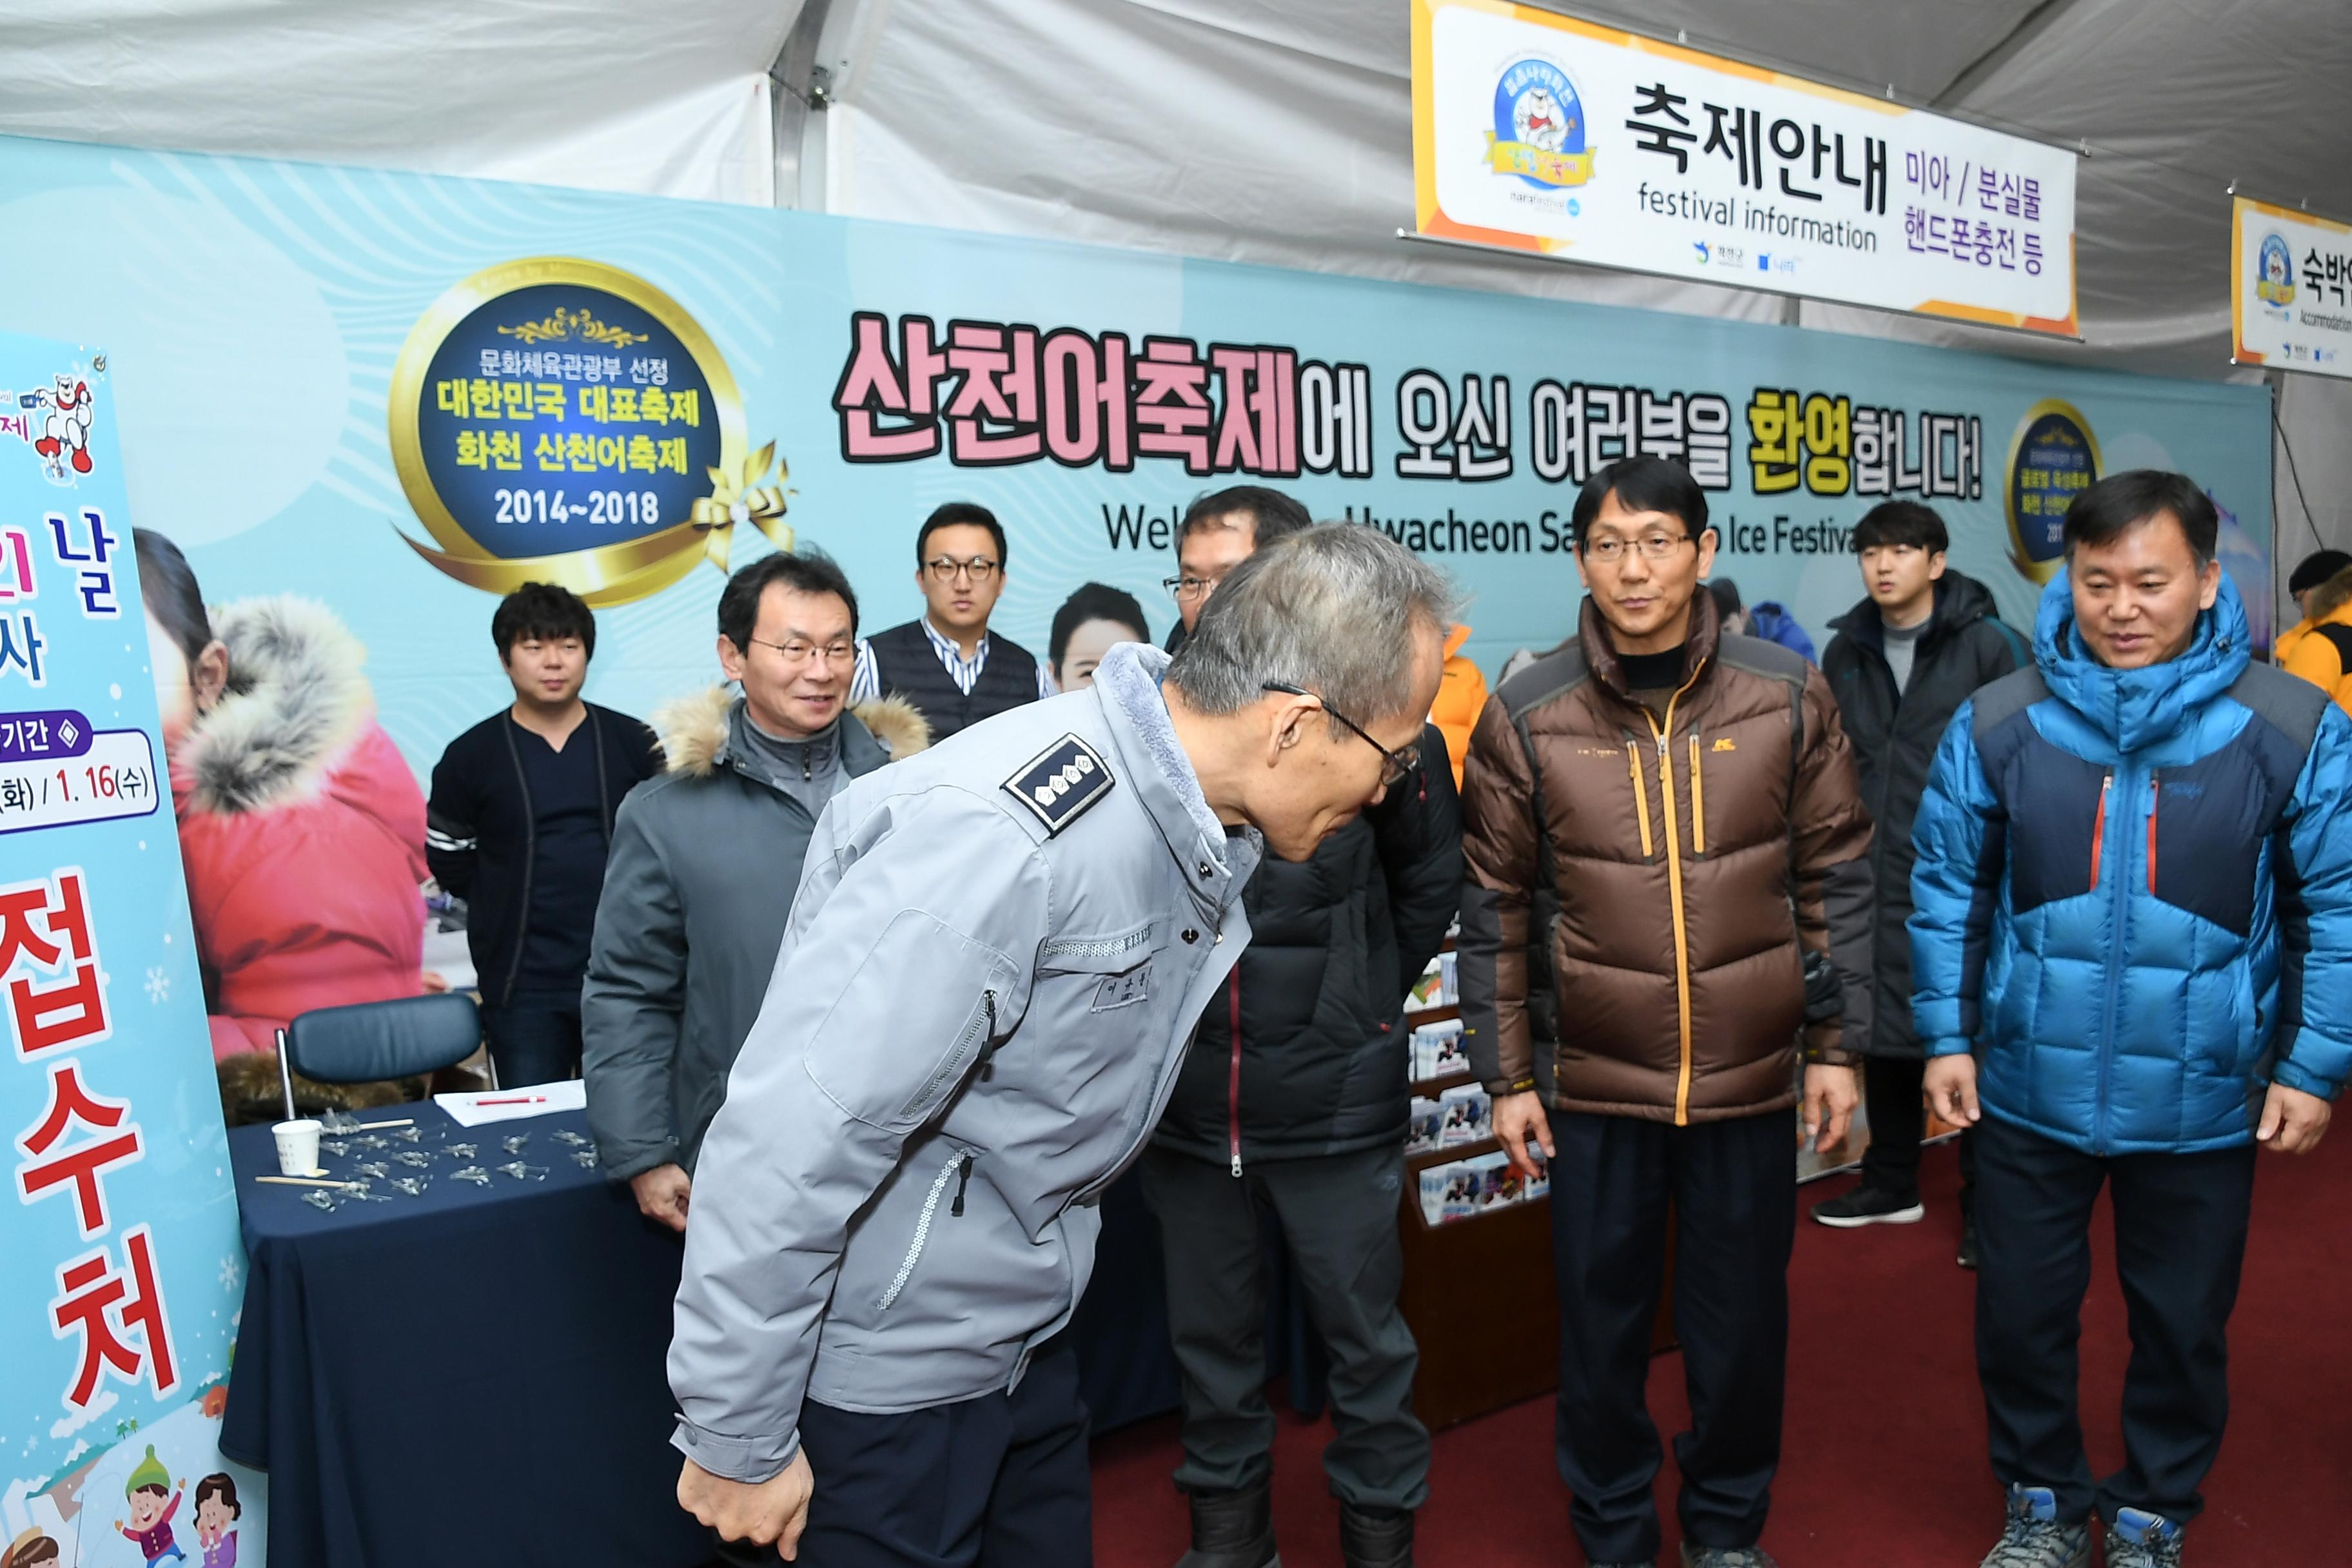 2019 화천산천어축제장 이규문 화천경찰서장 접견 의 사진